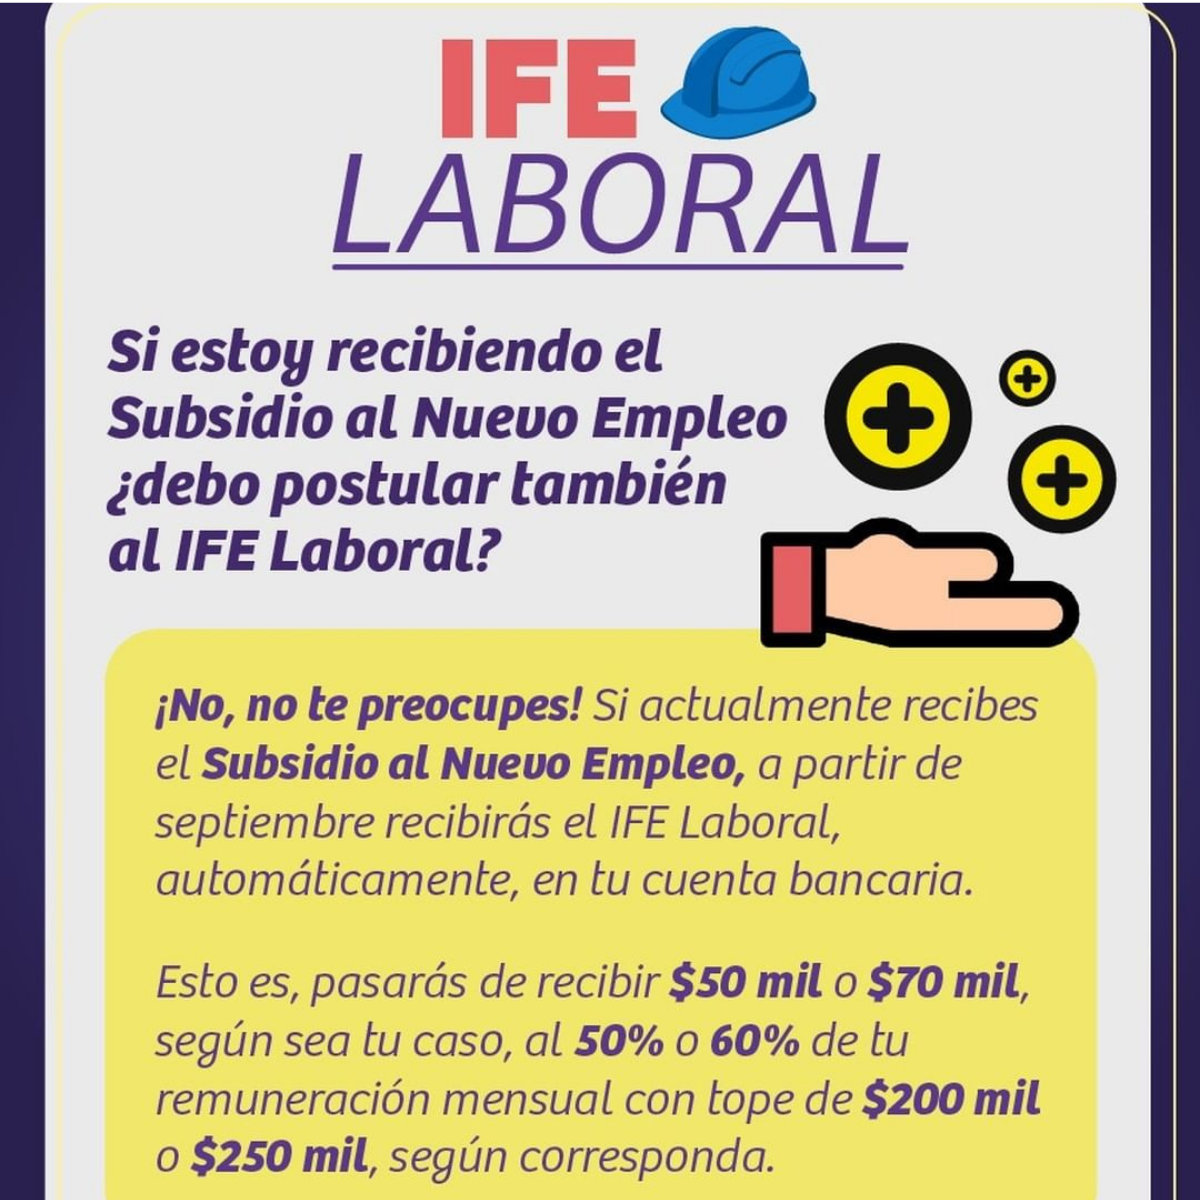 ¿Puedo recibir el IFE Laboral y seguir siendo beneficiario al IFE